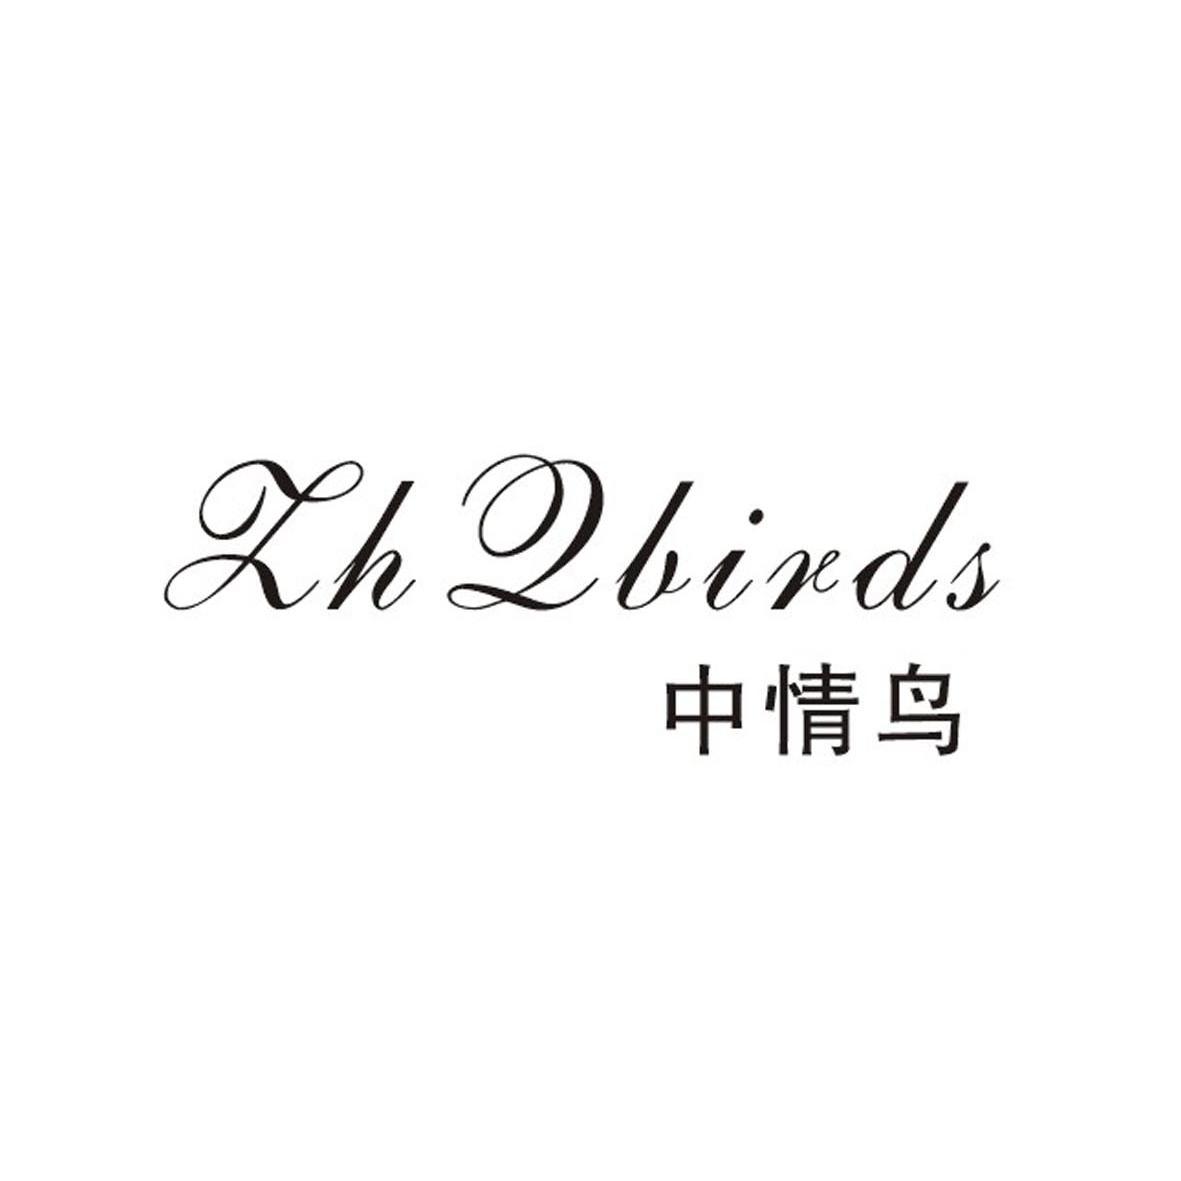 中情鸟 em>zhq/em em>birds/em>